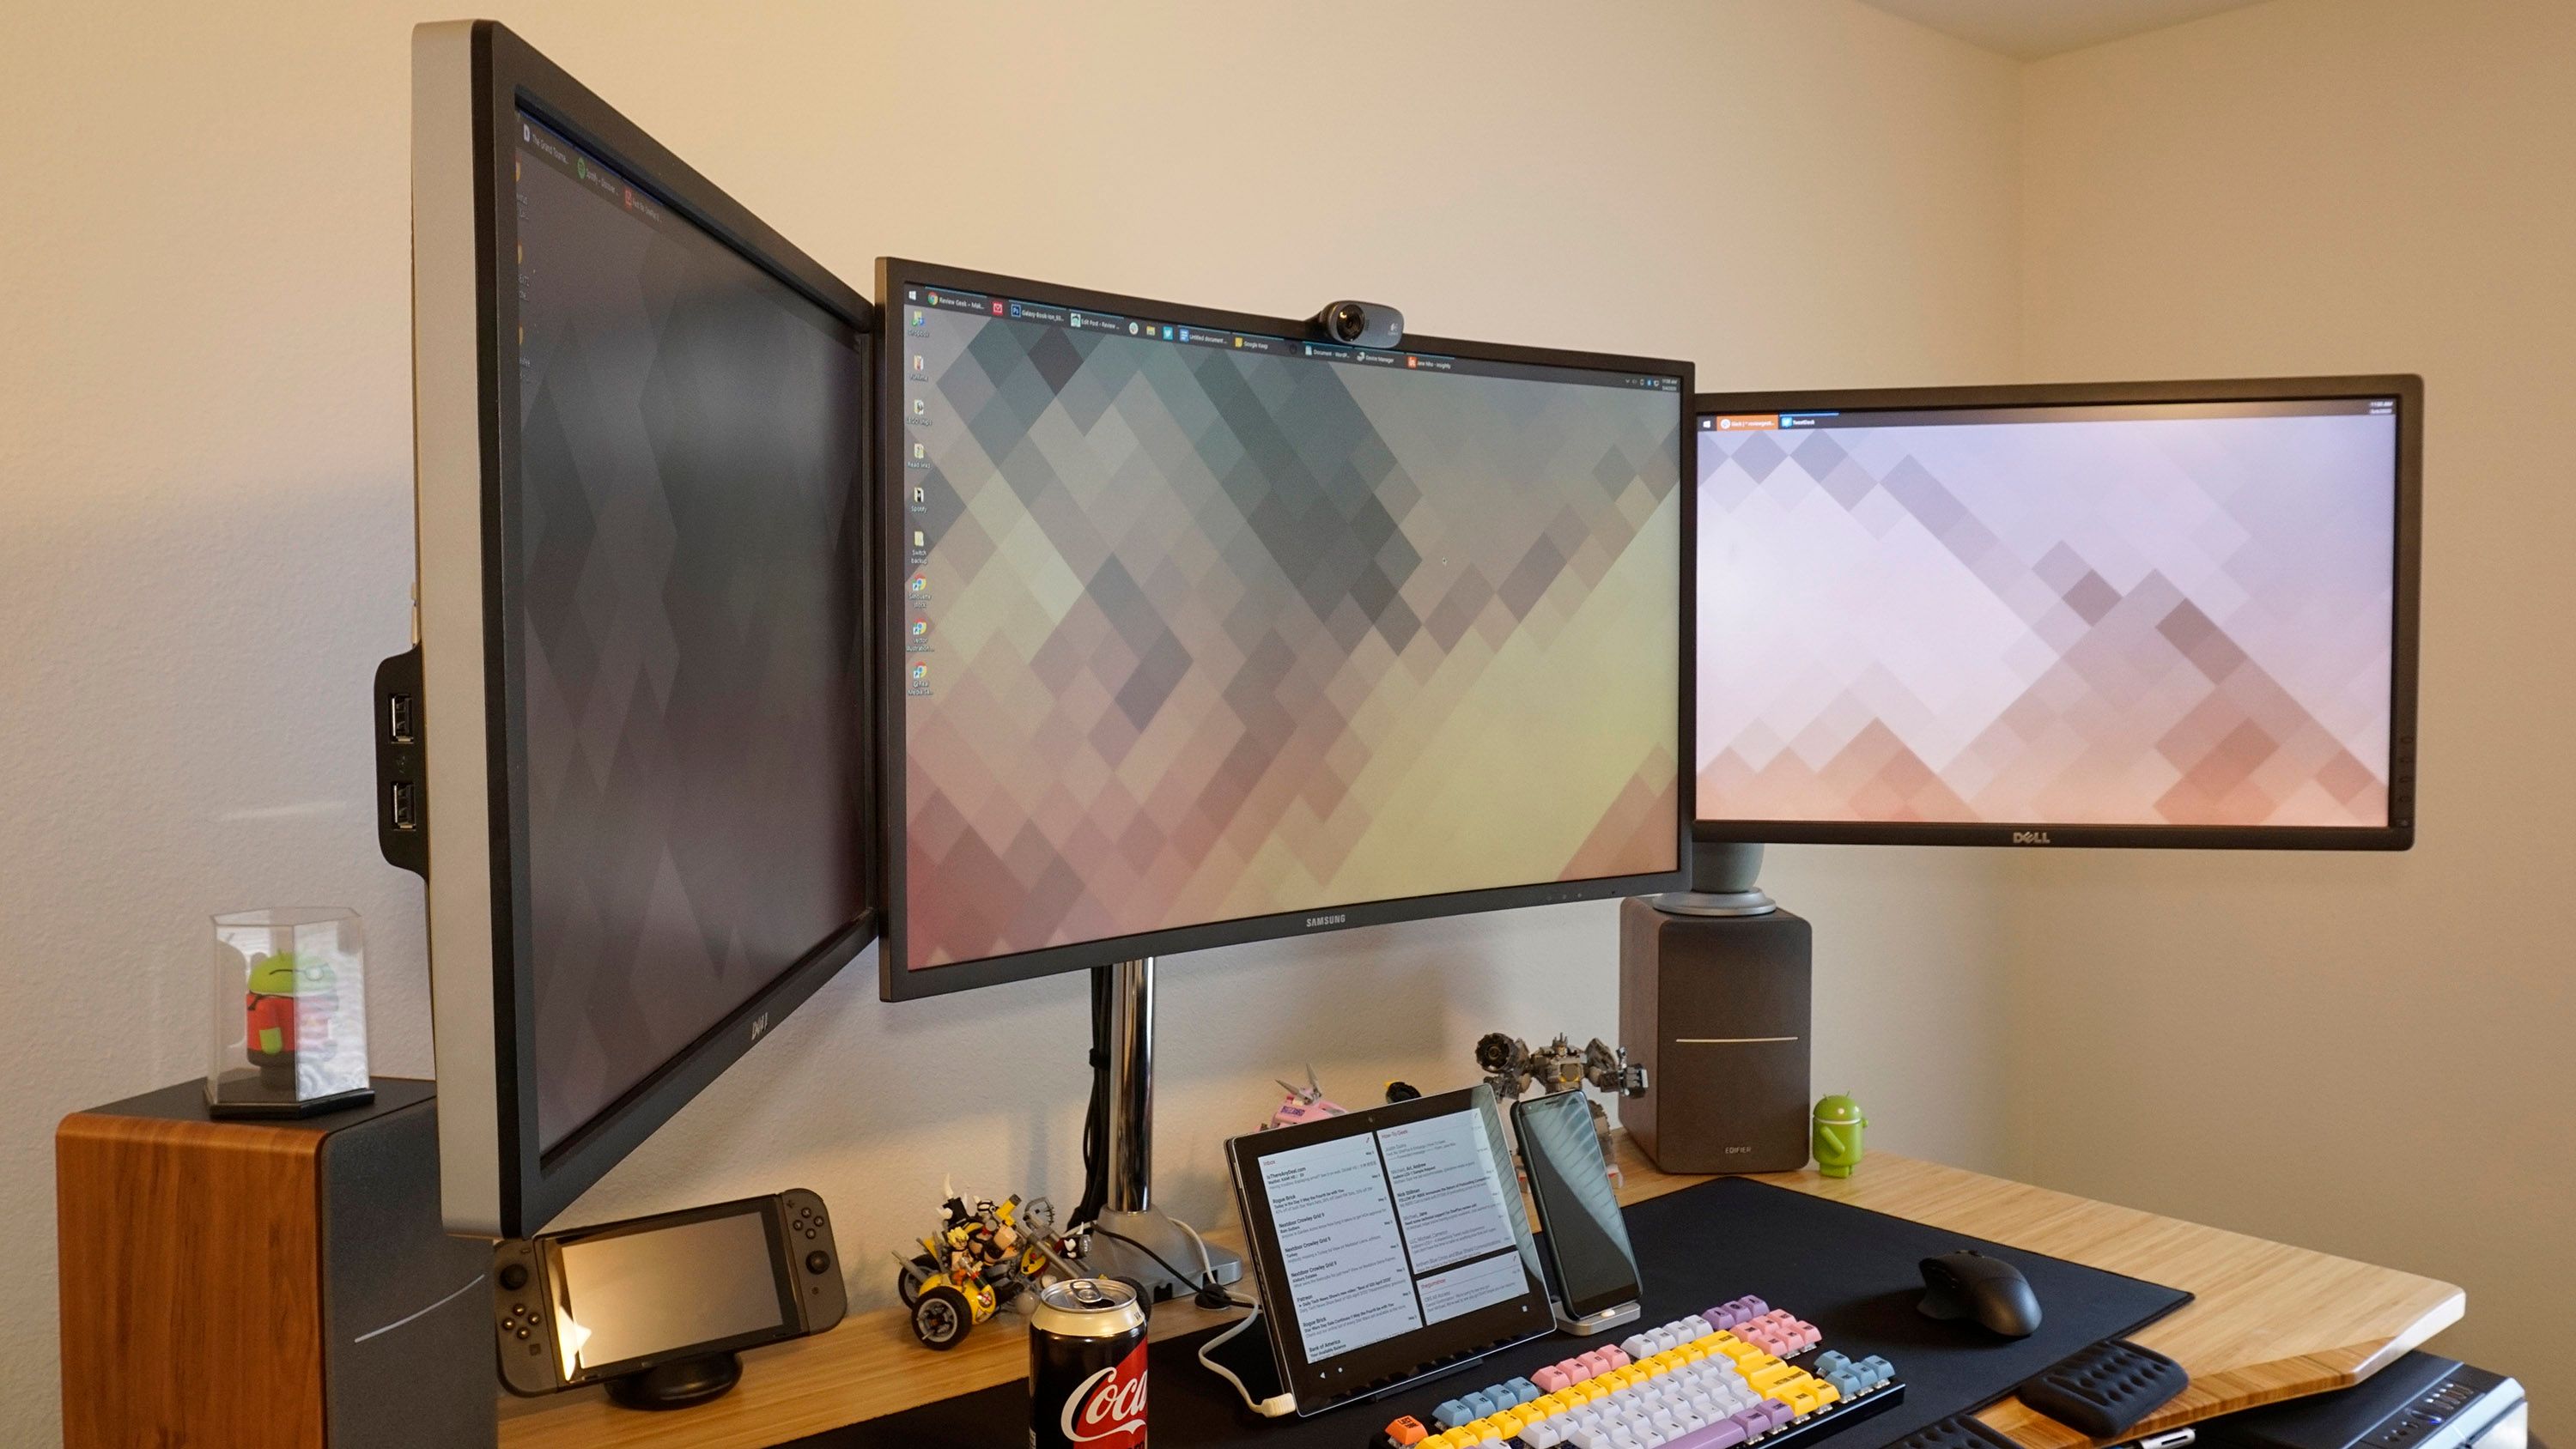 Triple monitor setup. 